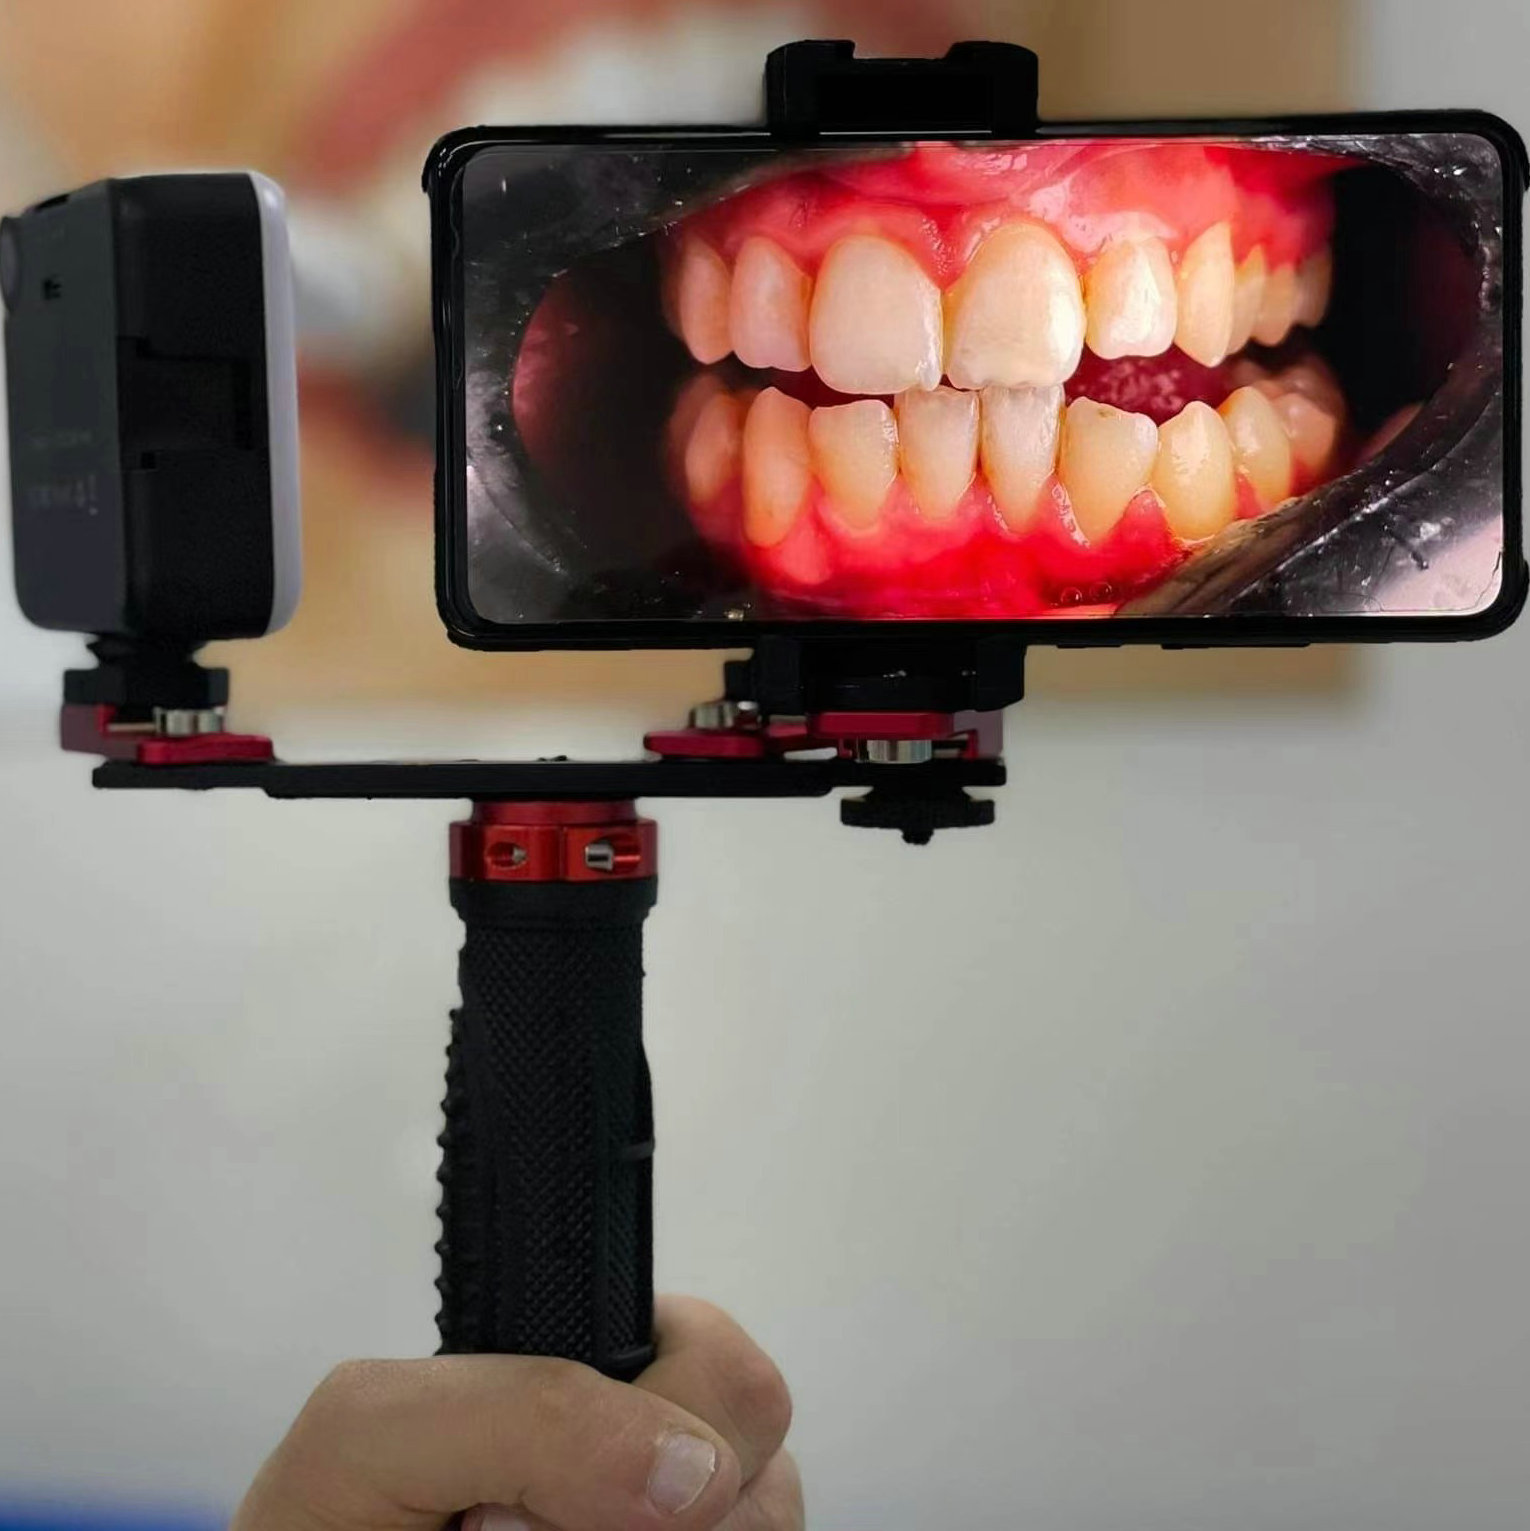 Lampara de fotografía oral dental teléfono móvil Fotografía dental luz de relleno Luz de flash